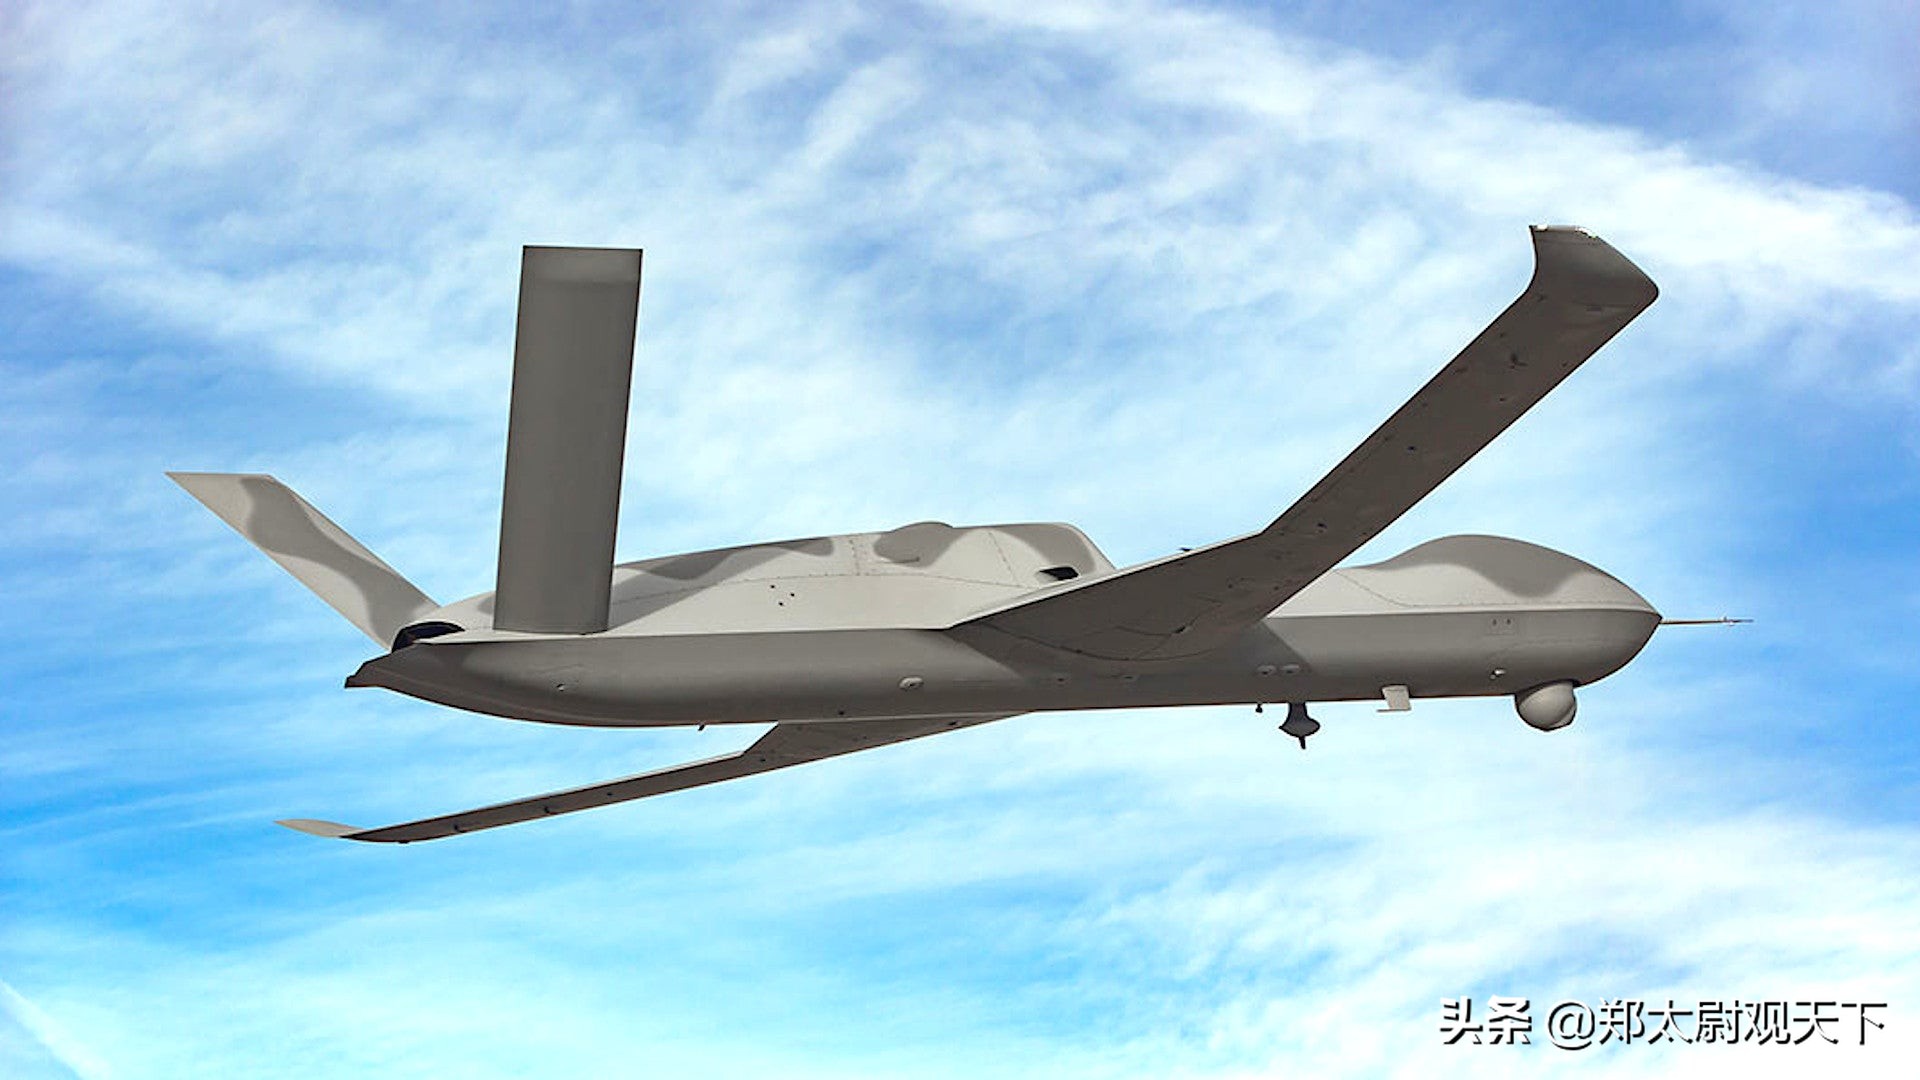 6架无人机组团空战，美军测试新AI系统！但对付大国竞争没戏？